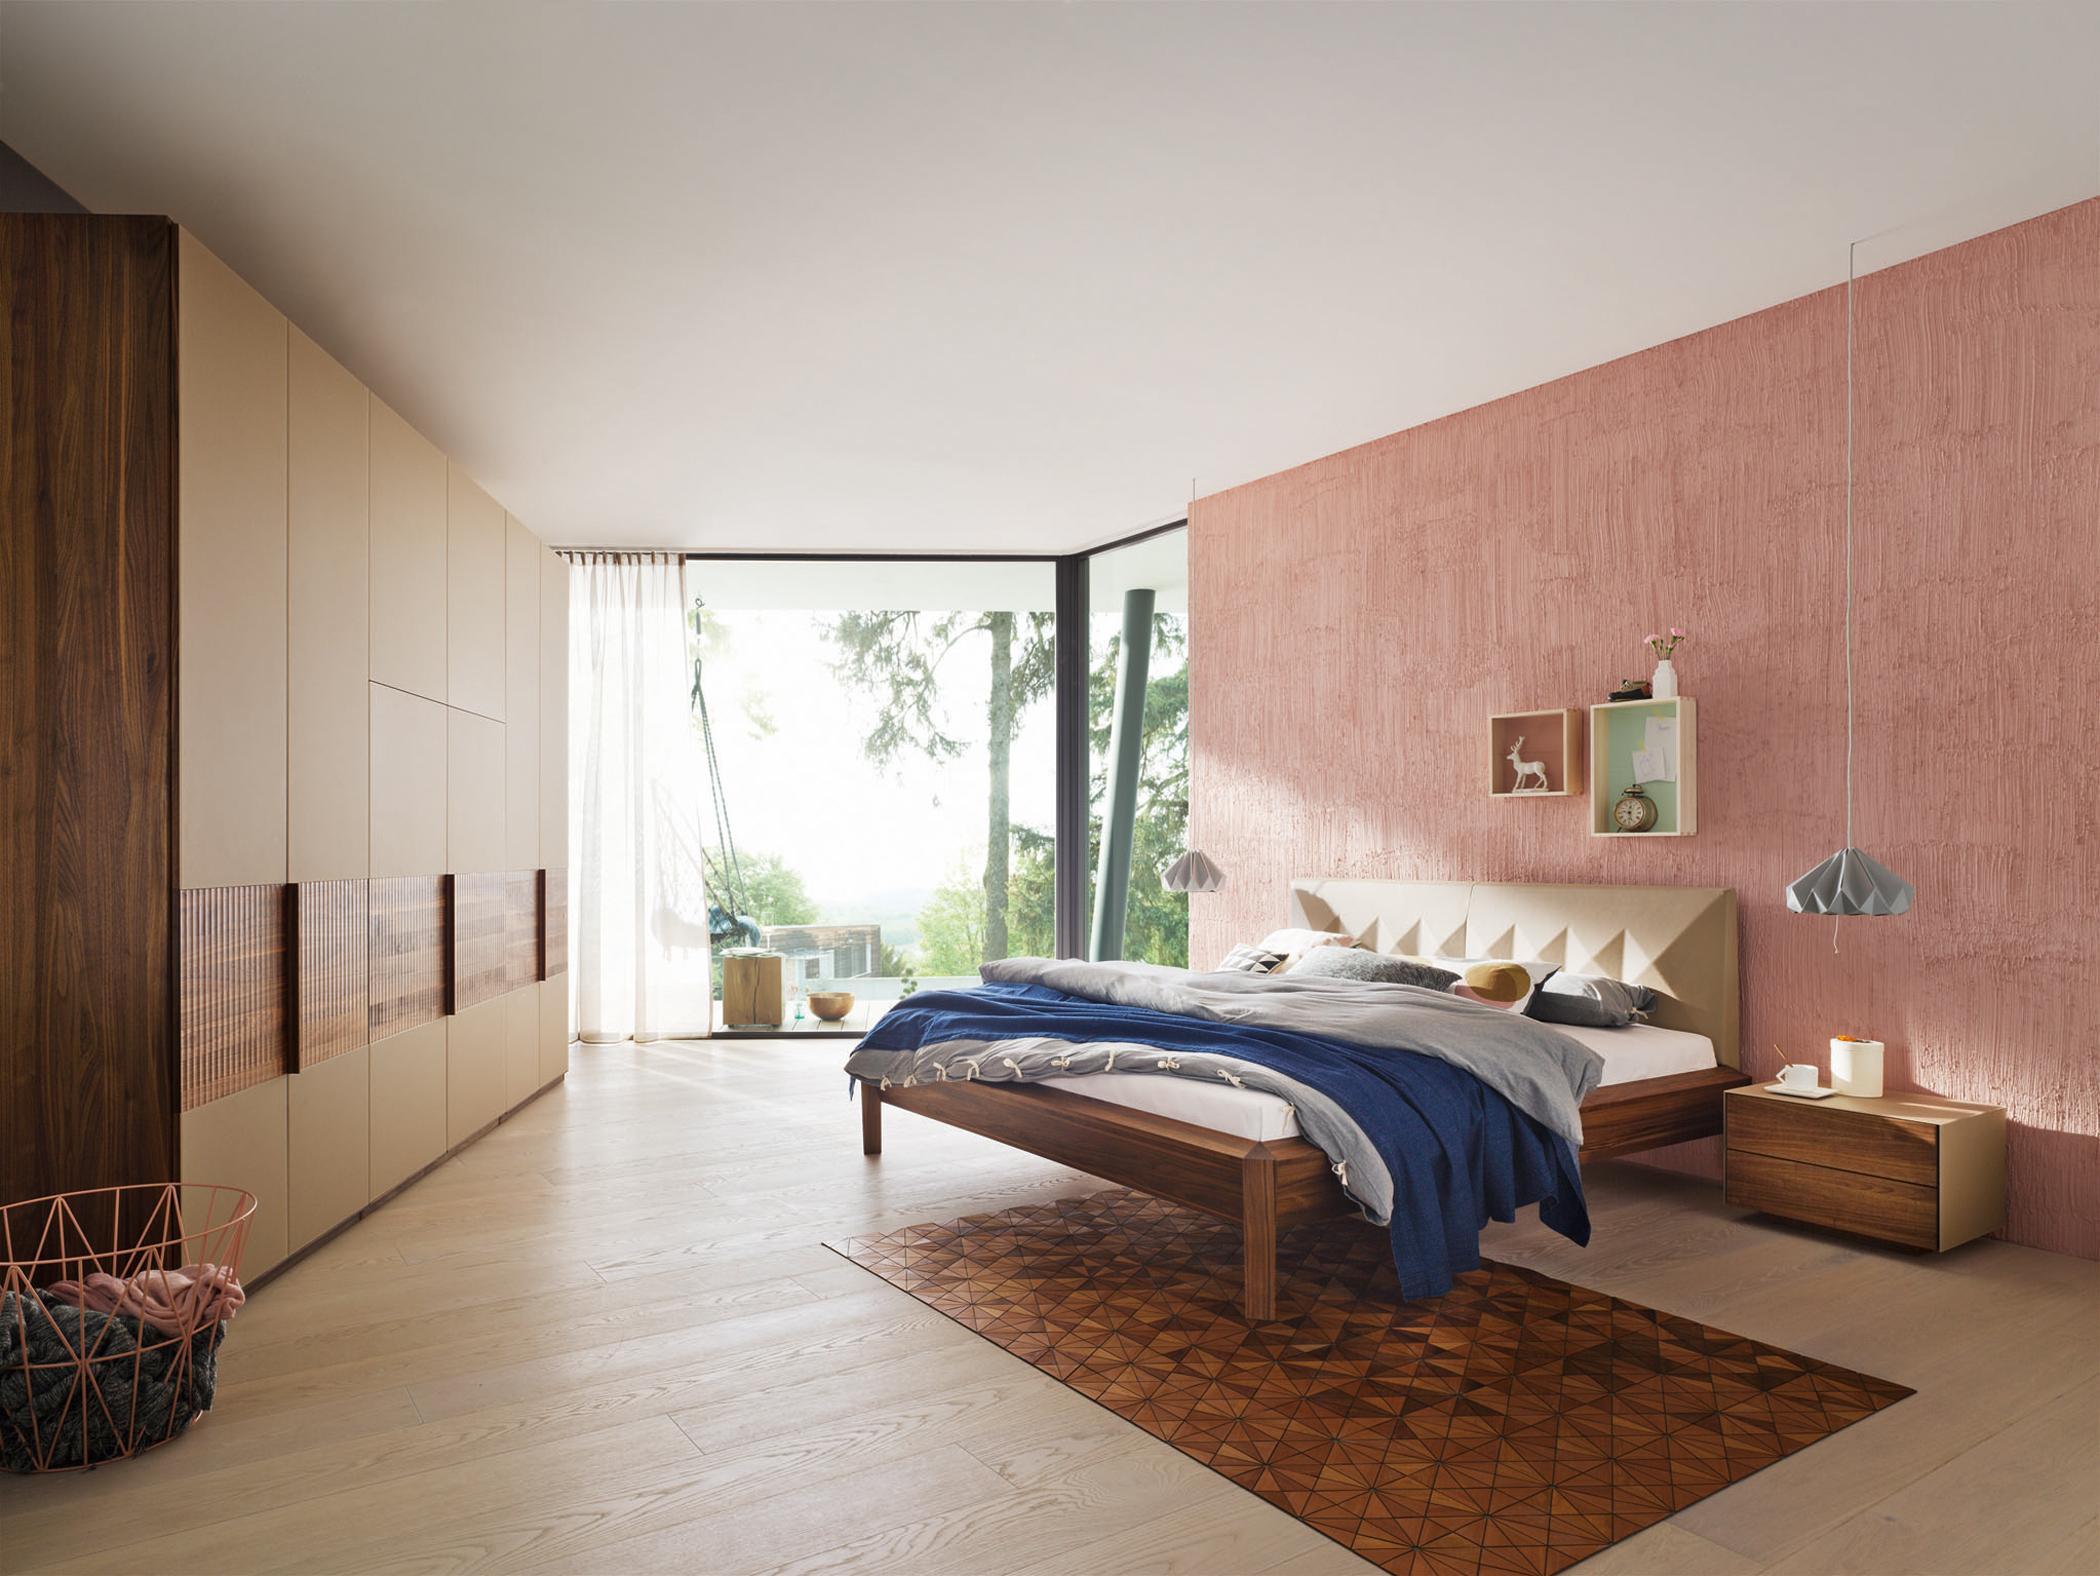 Holzmöbel und rosafarbene Wand im Schlafzimmer #wandgestaltung #nachttisch #kleiderschrank #hängeleuchte ©Team 7